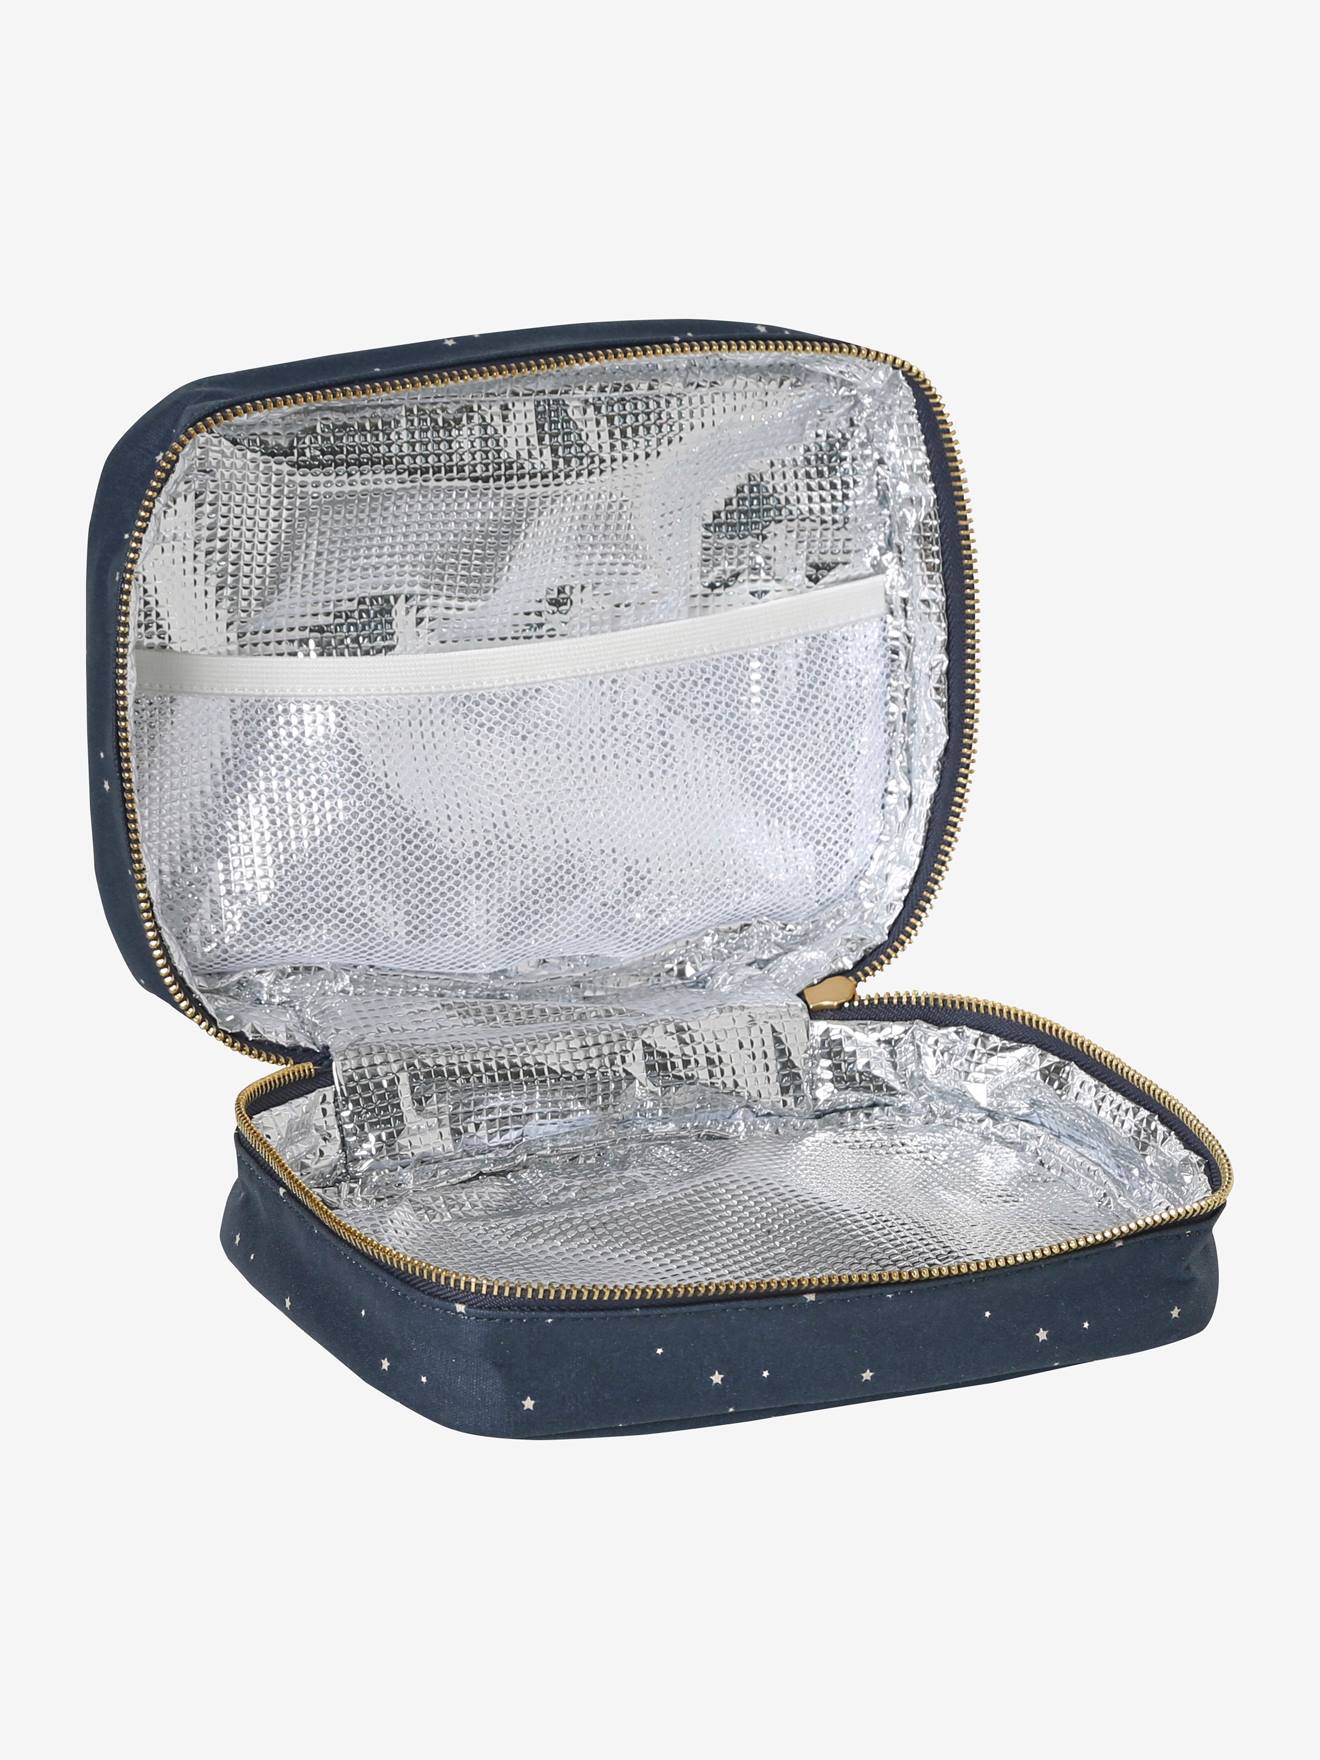 Lunch box bicolore en coton enduit marine étoile - Vertbaudet